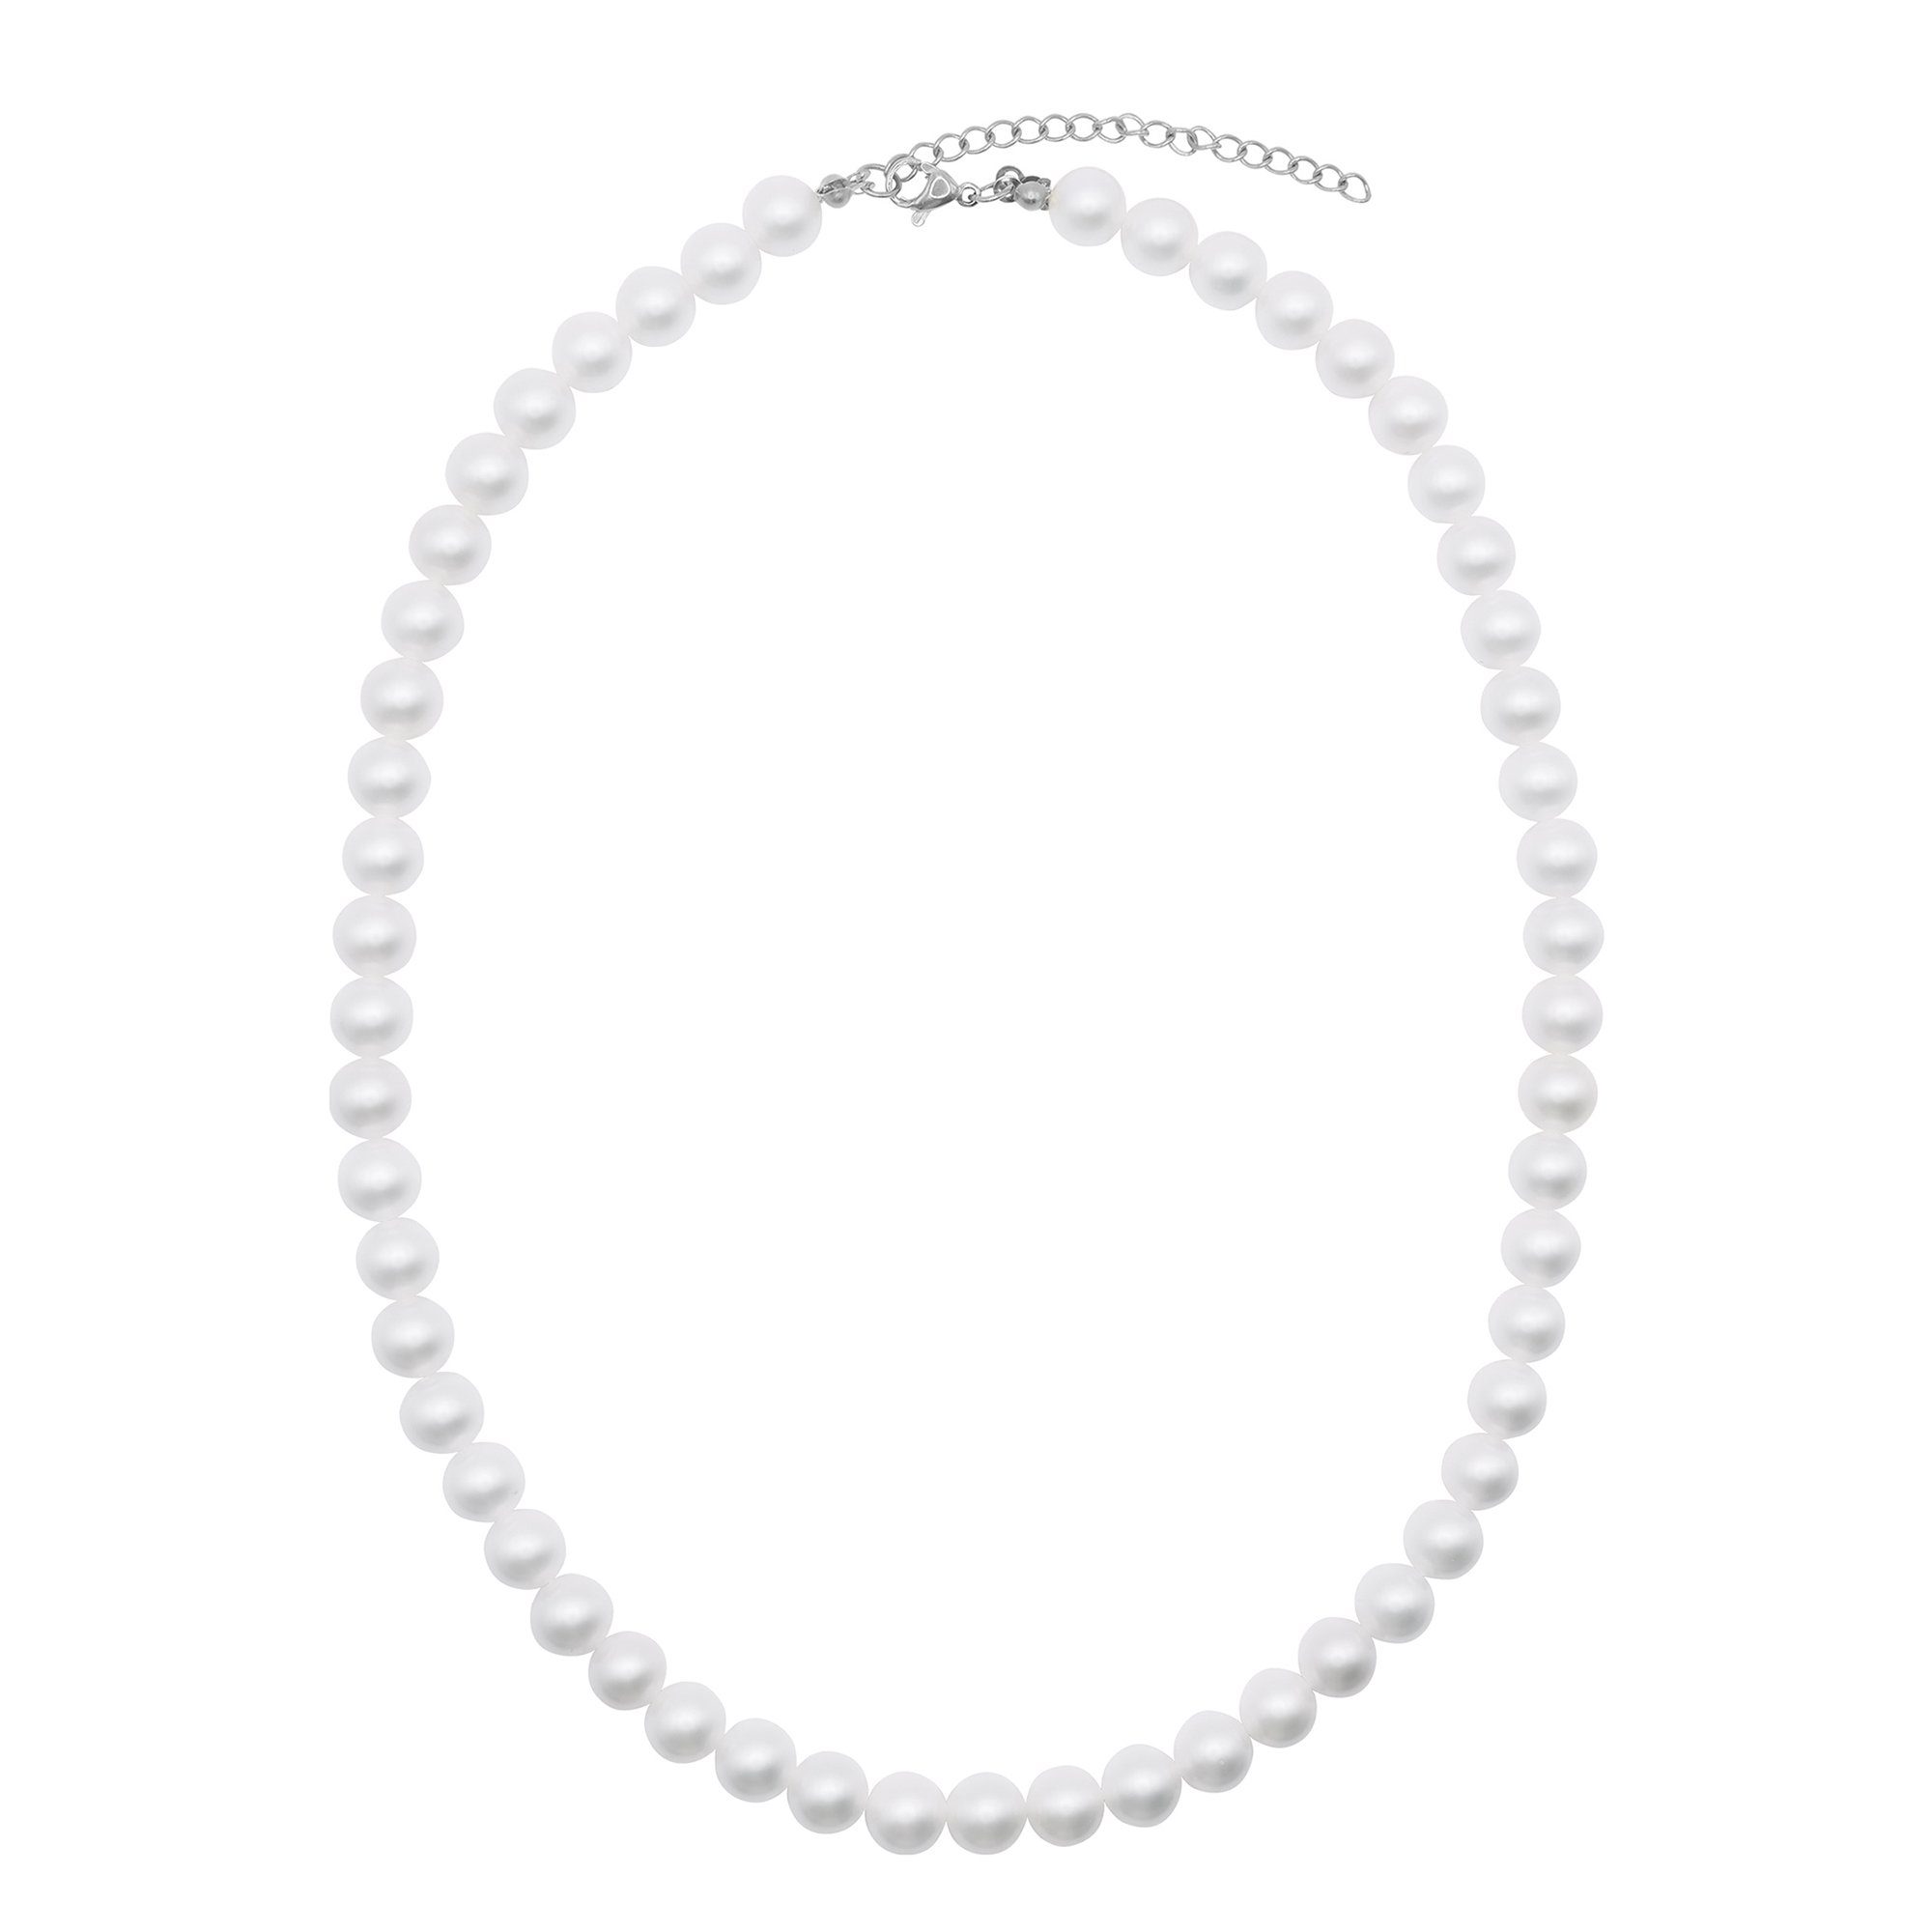 Heideman Collier Perlenkette No. 8 (inkl. Geschenkverpackung), Collier mit Perlen weiß oder farbig